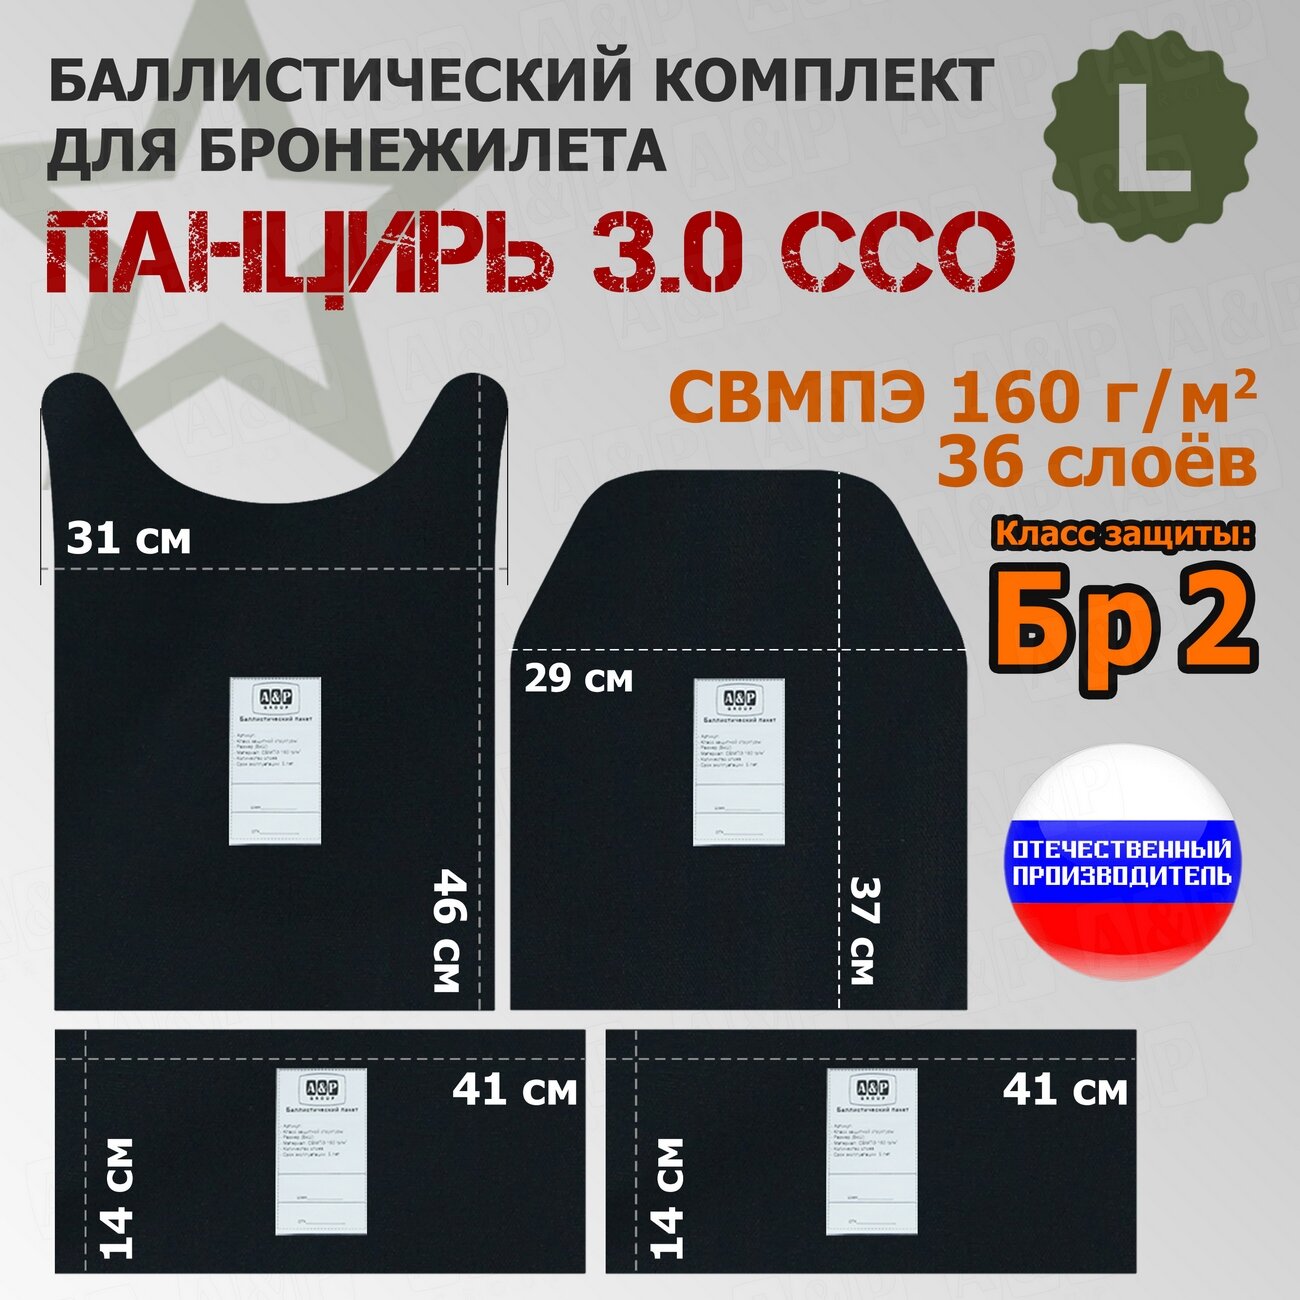 Комплект баллистических пакетов для плитника "Панцирь 3.0" (размер L) от ССО. Класс защитной структуры Бр 2.